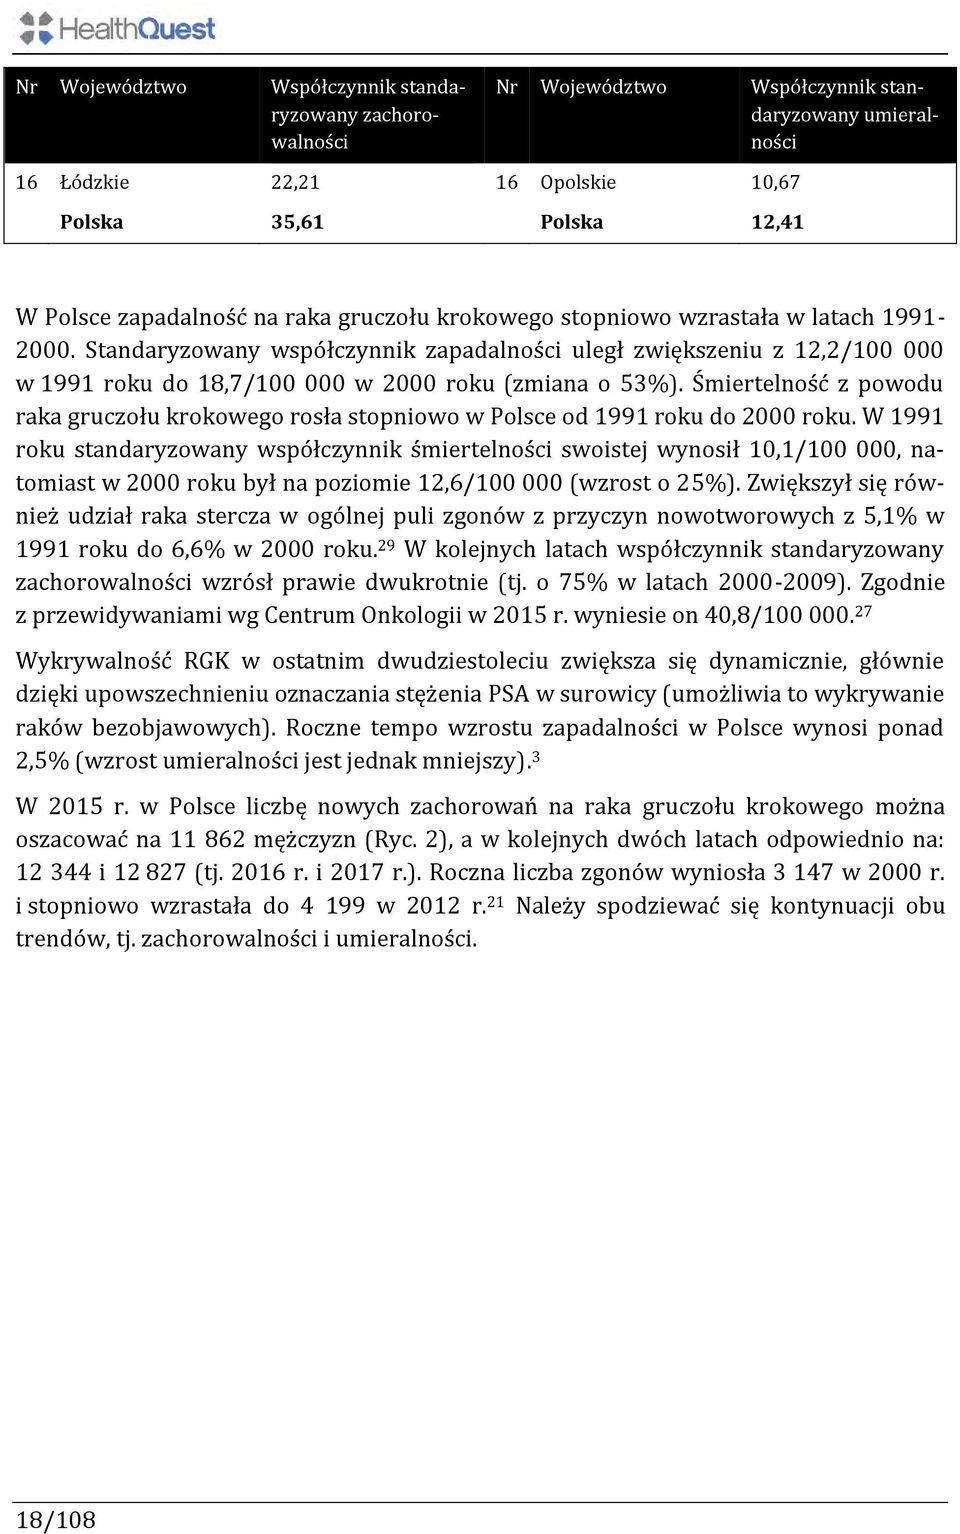 Śmiertelność z powodu raka gruczołu krokowego rosła stopniowo w Polsce od 1991 roku do 2000 roku.